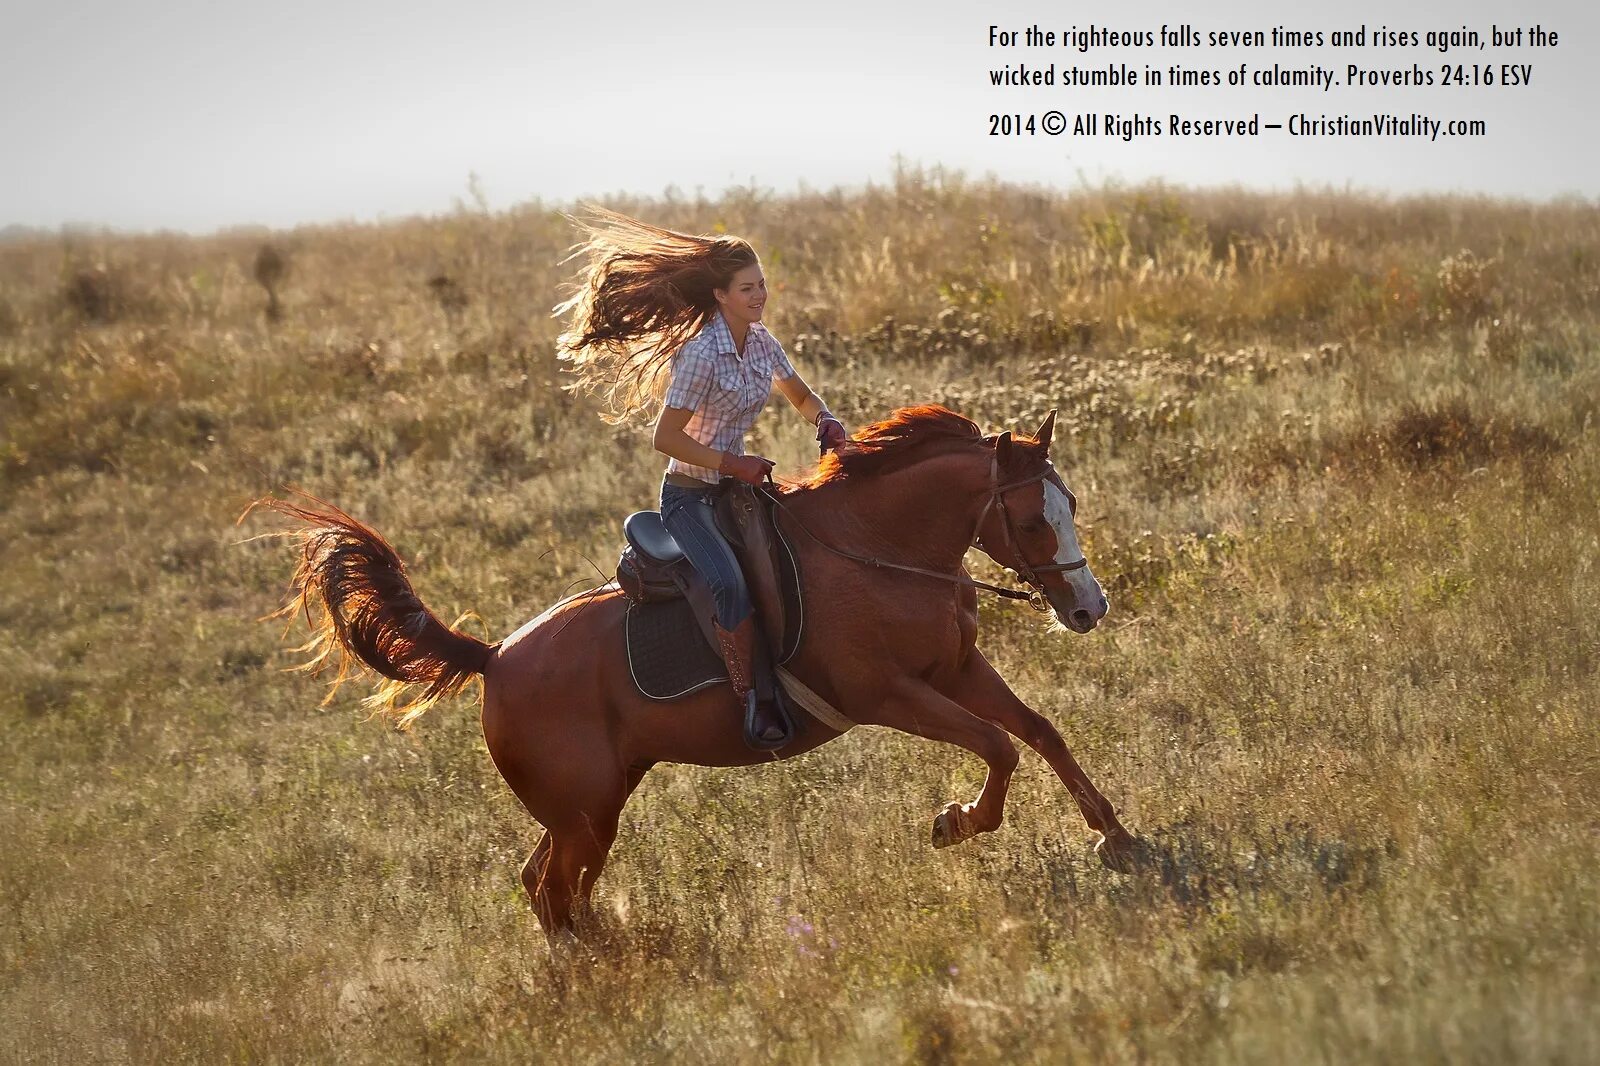 Мы вновь ехали на лошадях. Рыжая девушка на лошади. Верхом на коне в поле. Девушка едет на коне. Езда в полях на лошади.